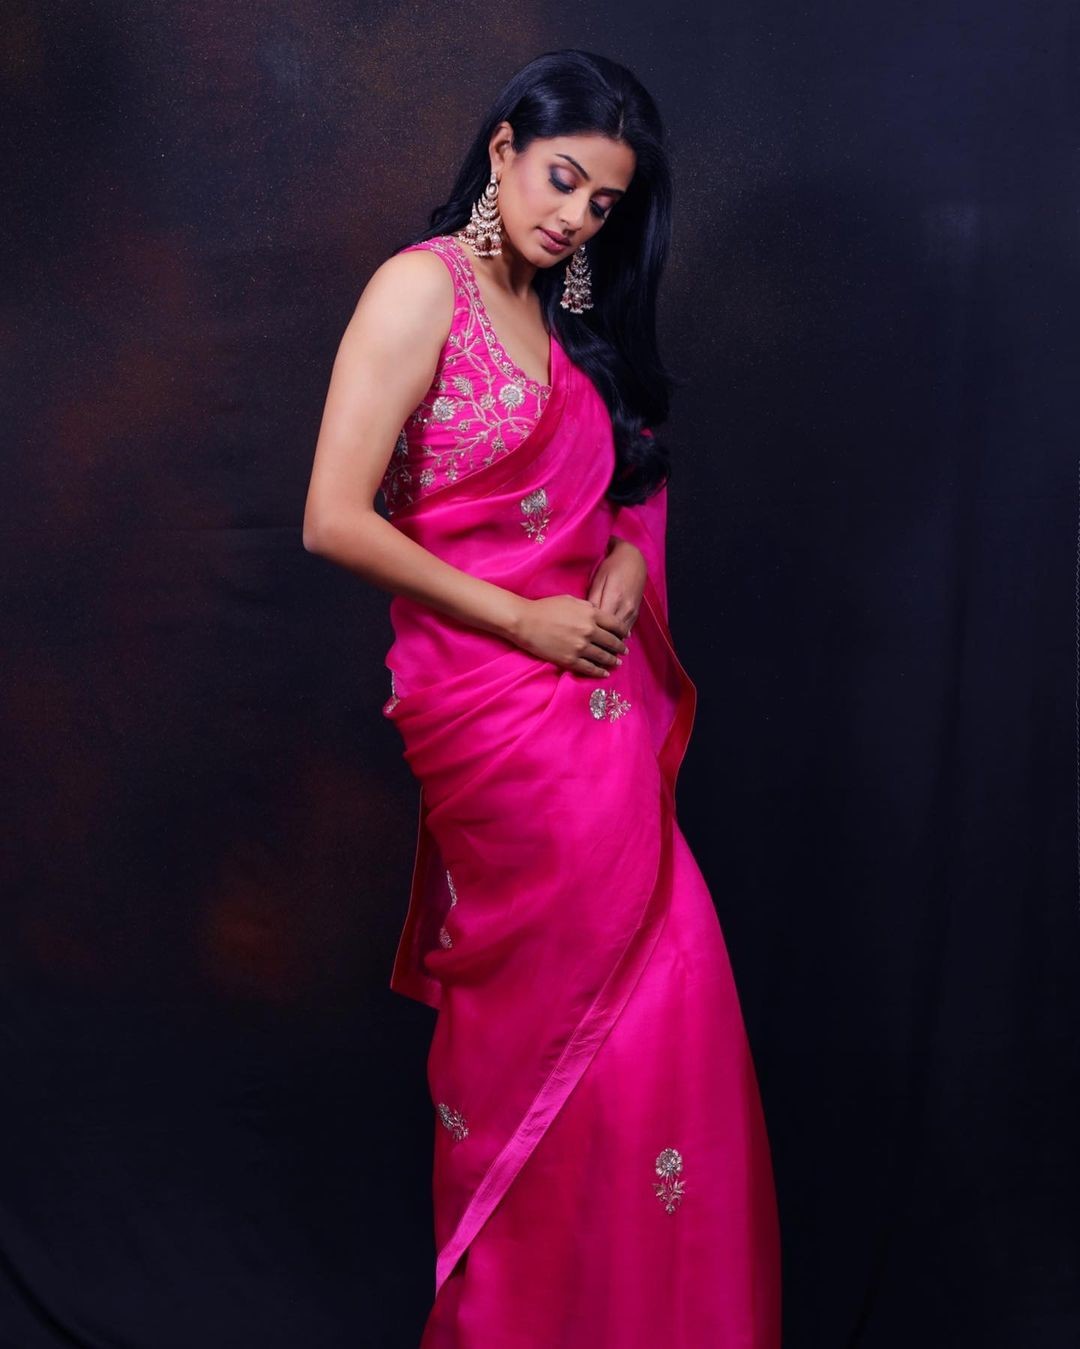 Stunning Priyamani in pink saree.